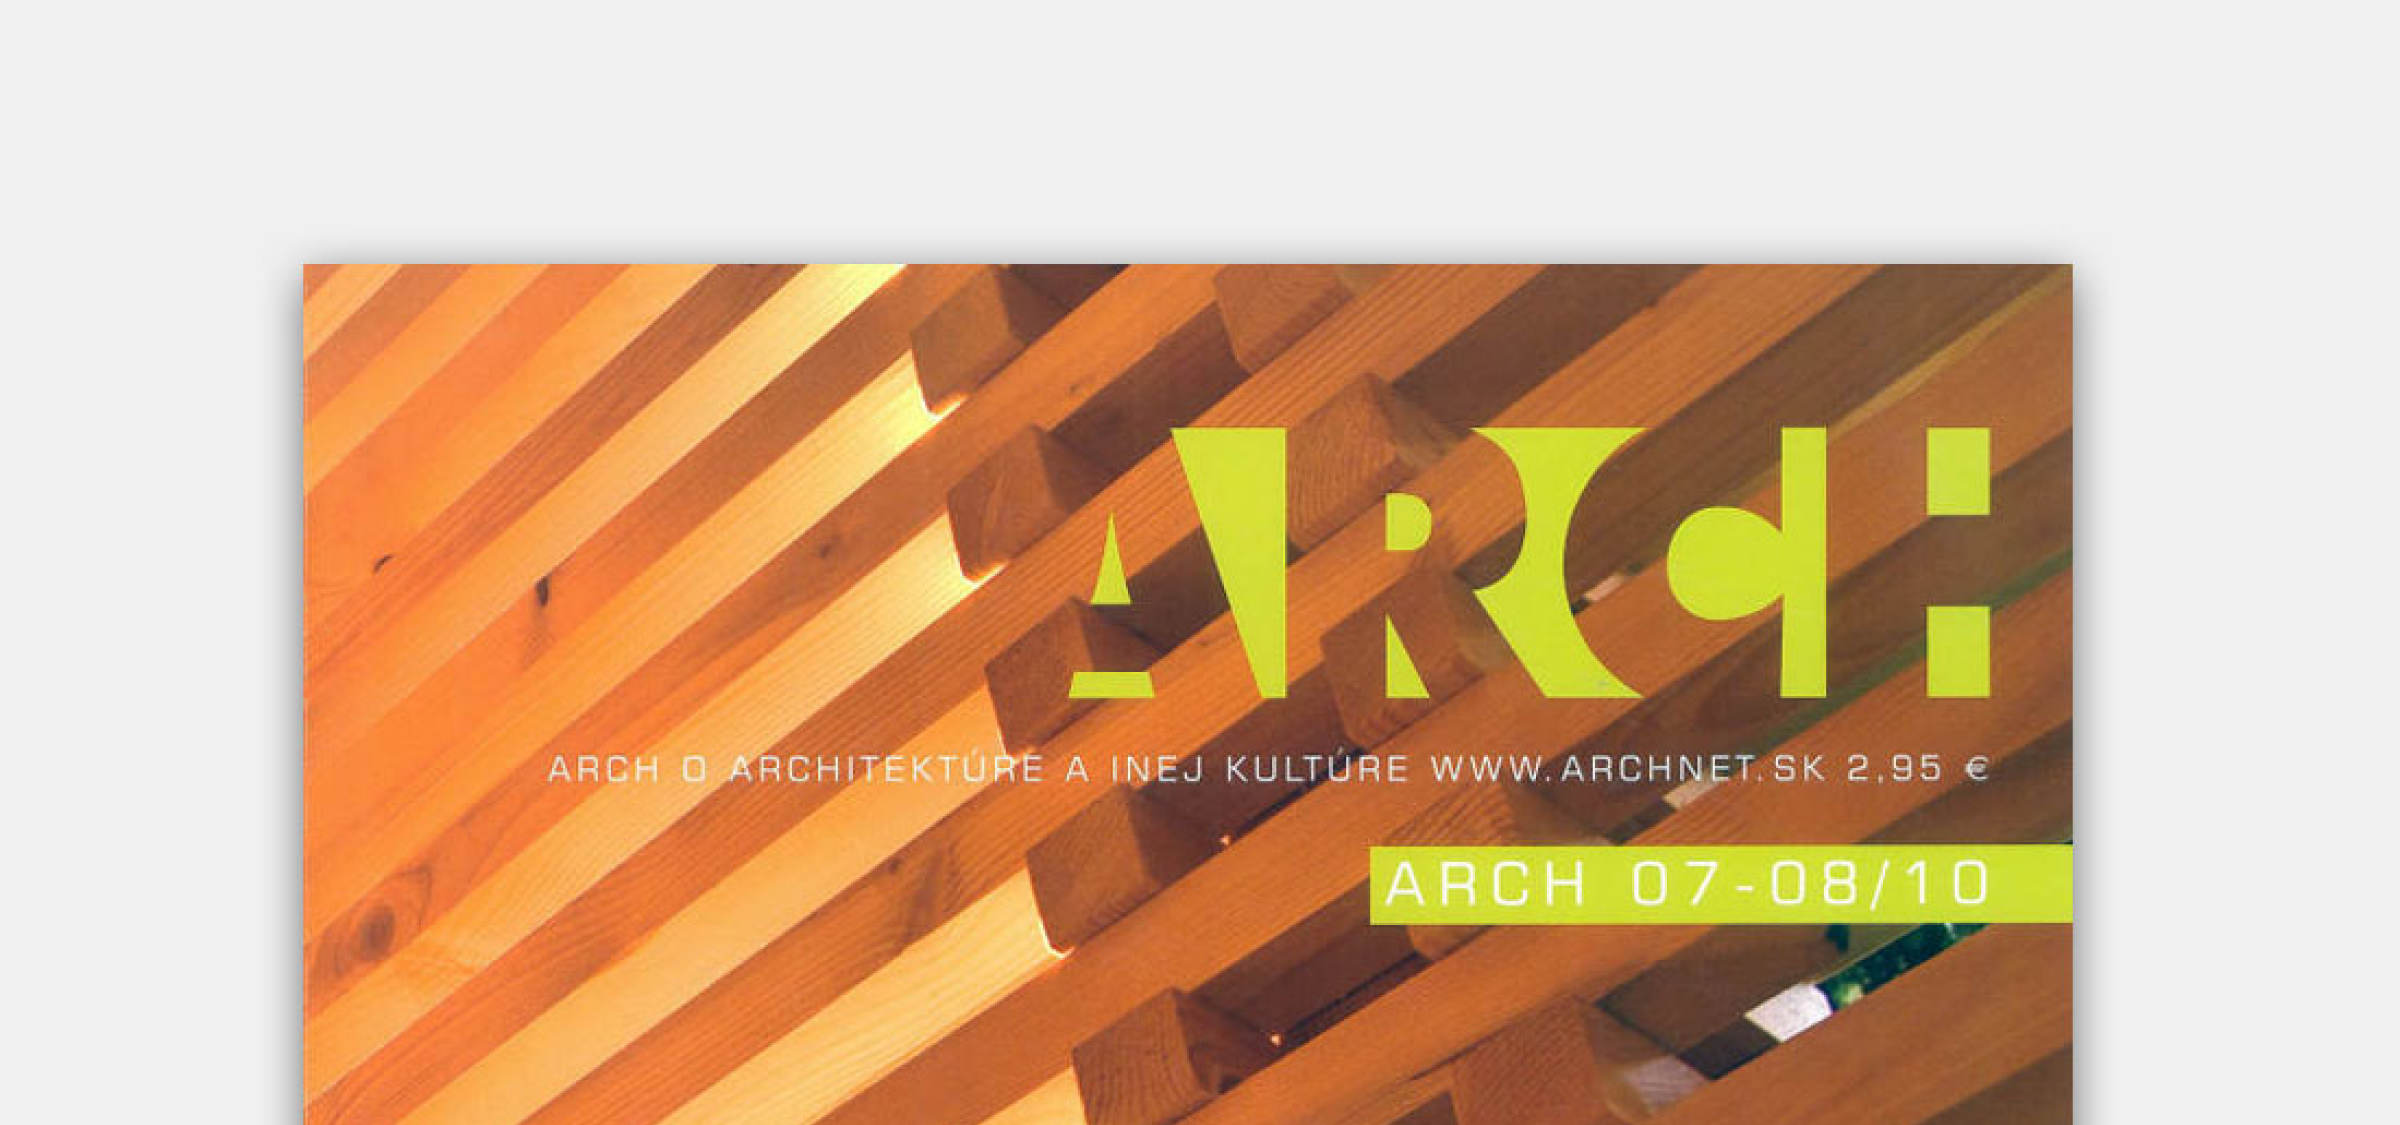 Vila A v časopise ARCH | News | Atrium Architekti